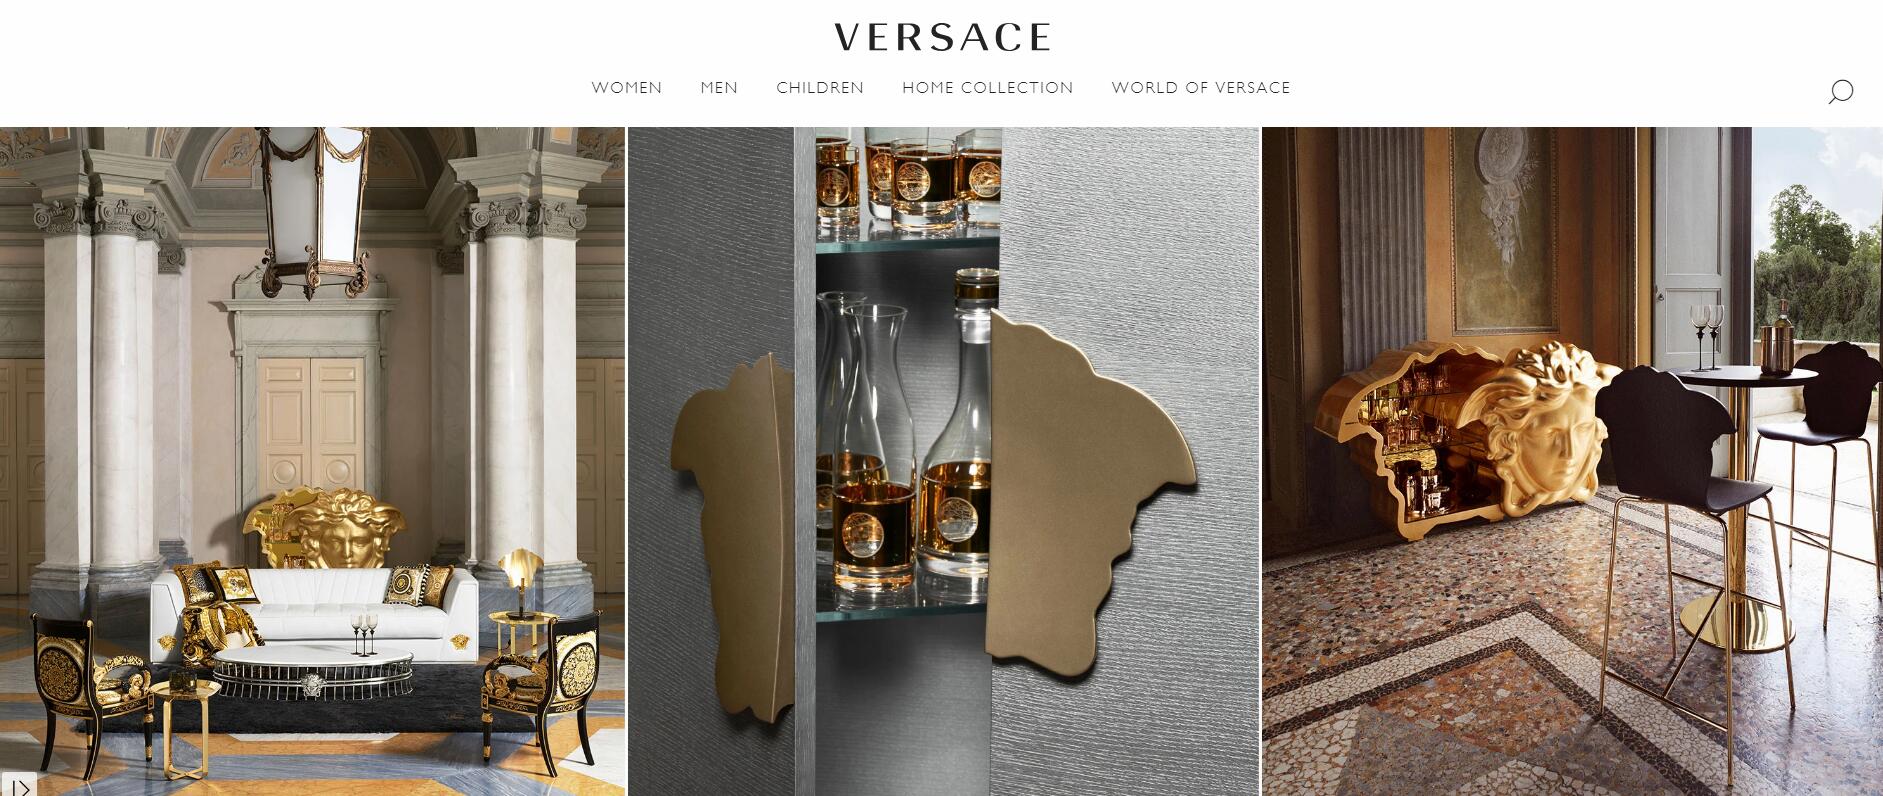 Versace Home 与海沃氏旗下意大利高端家具集团 Lifestyle Design 签署家具产品授权协议